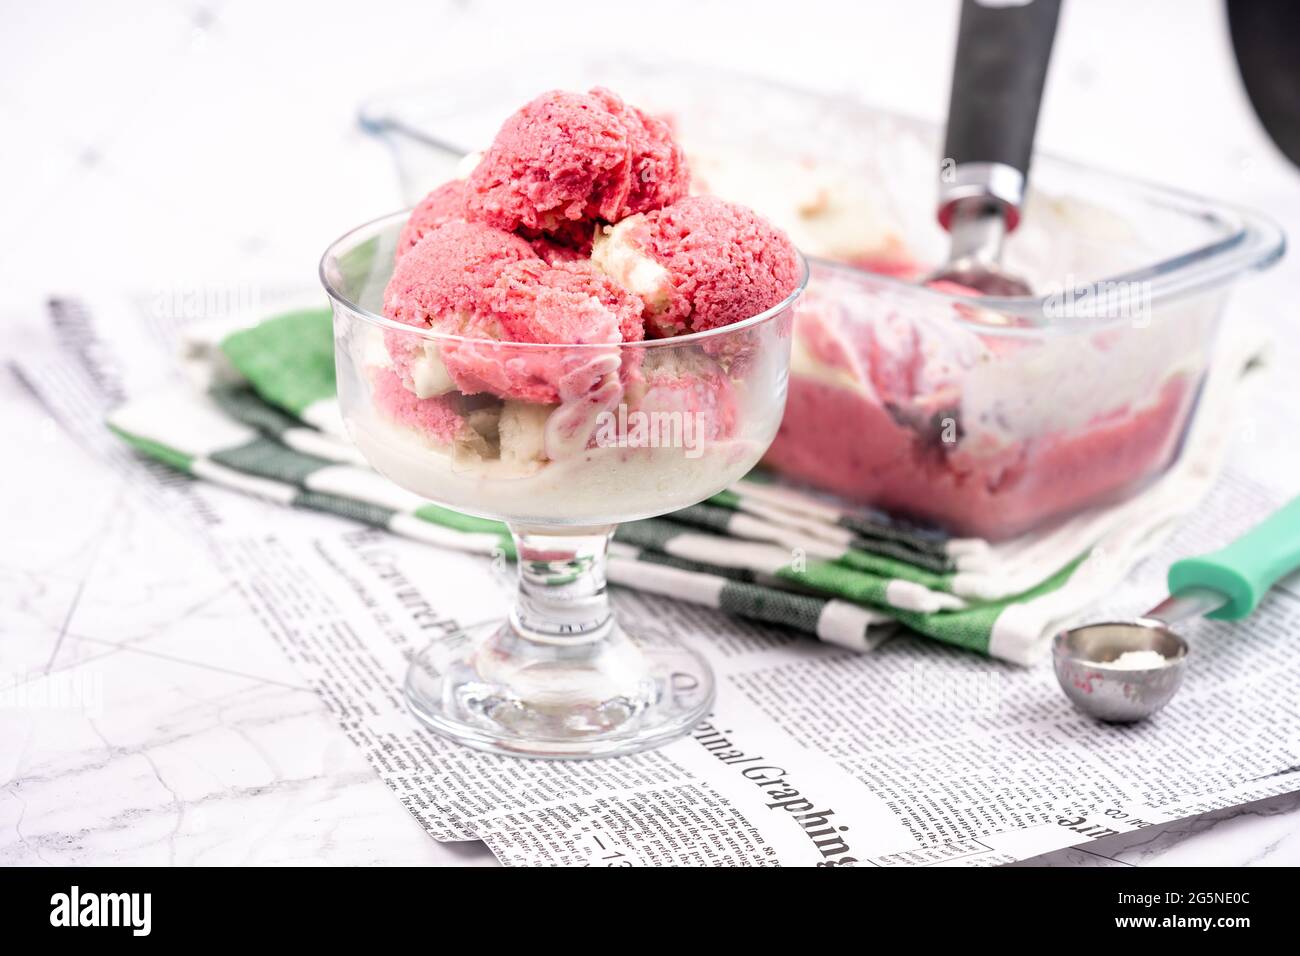 Strawberry frozen yogurt in glass bowl, ice cream balls, container with homemade sundae Stock Photo